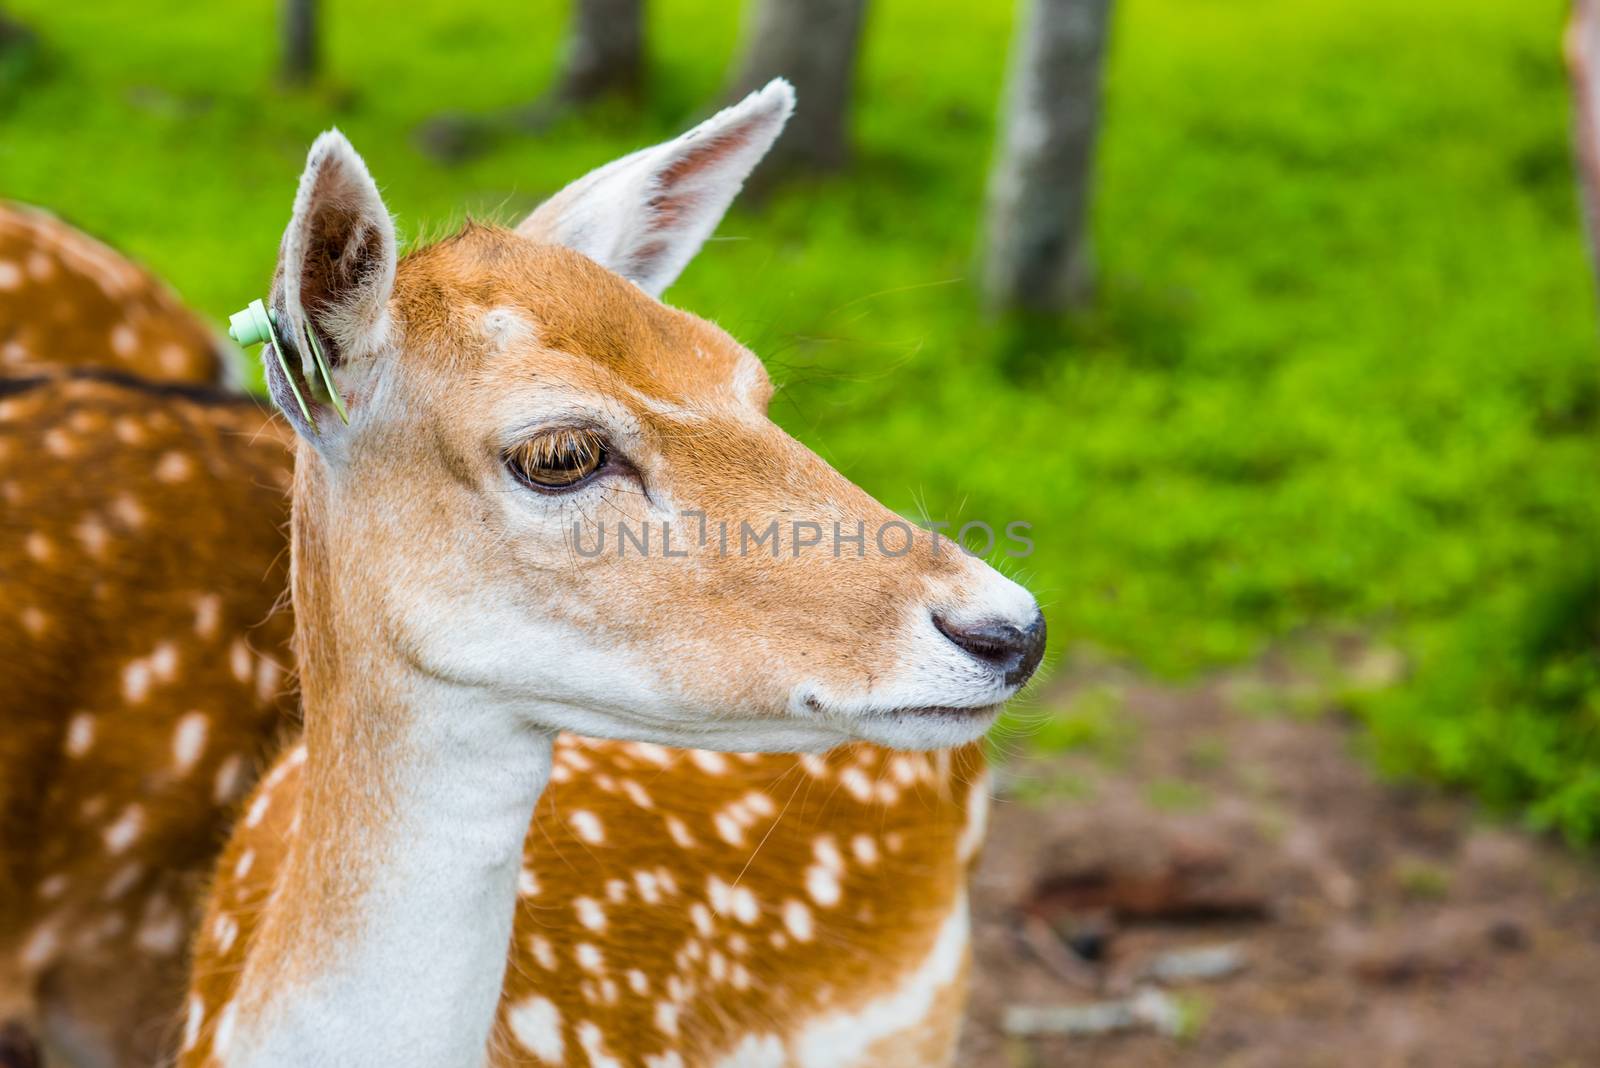 Deer close-up amid green grass summer background